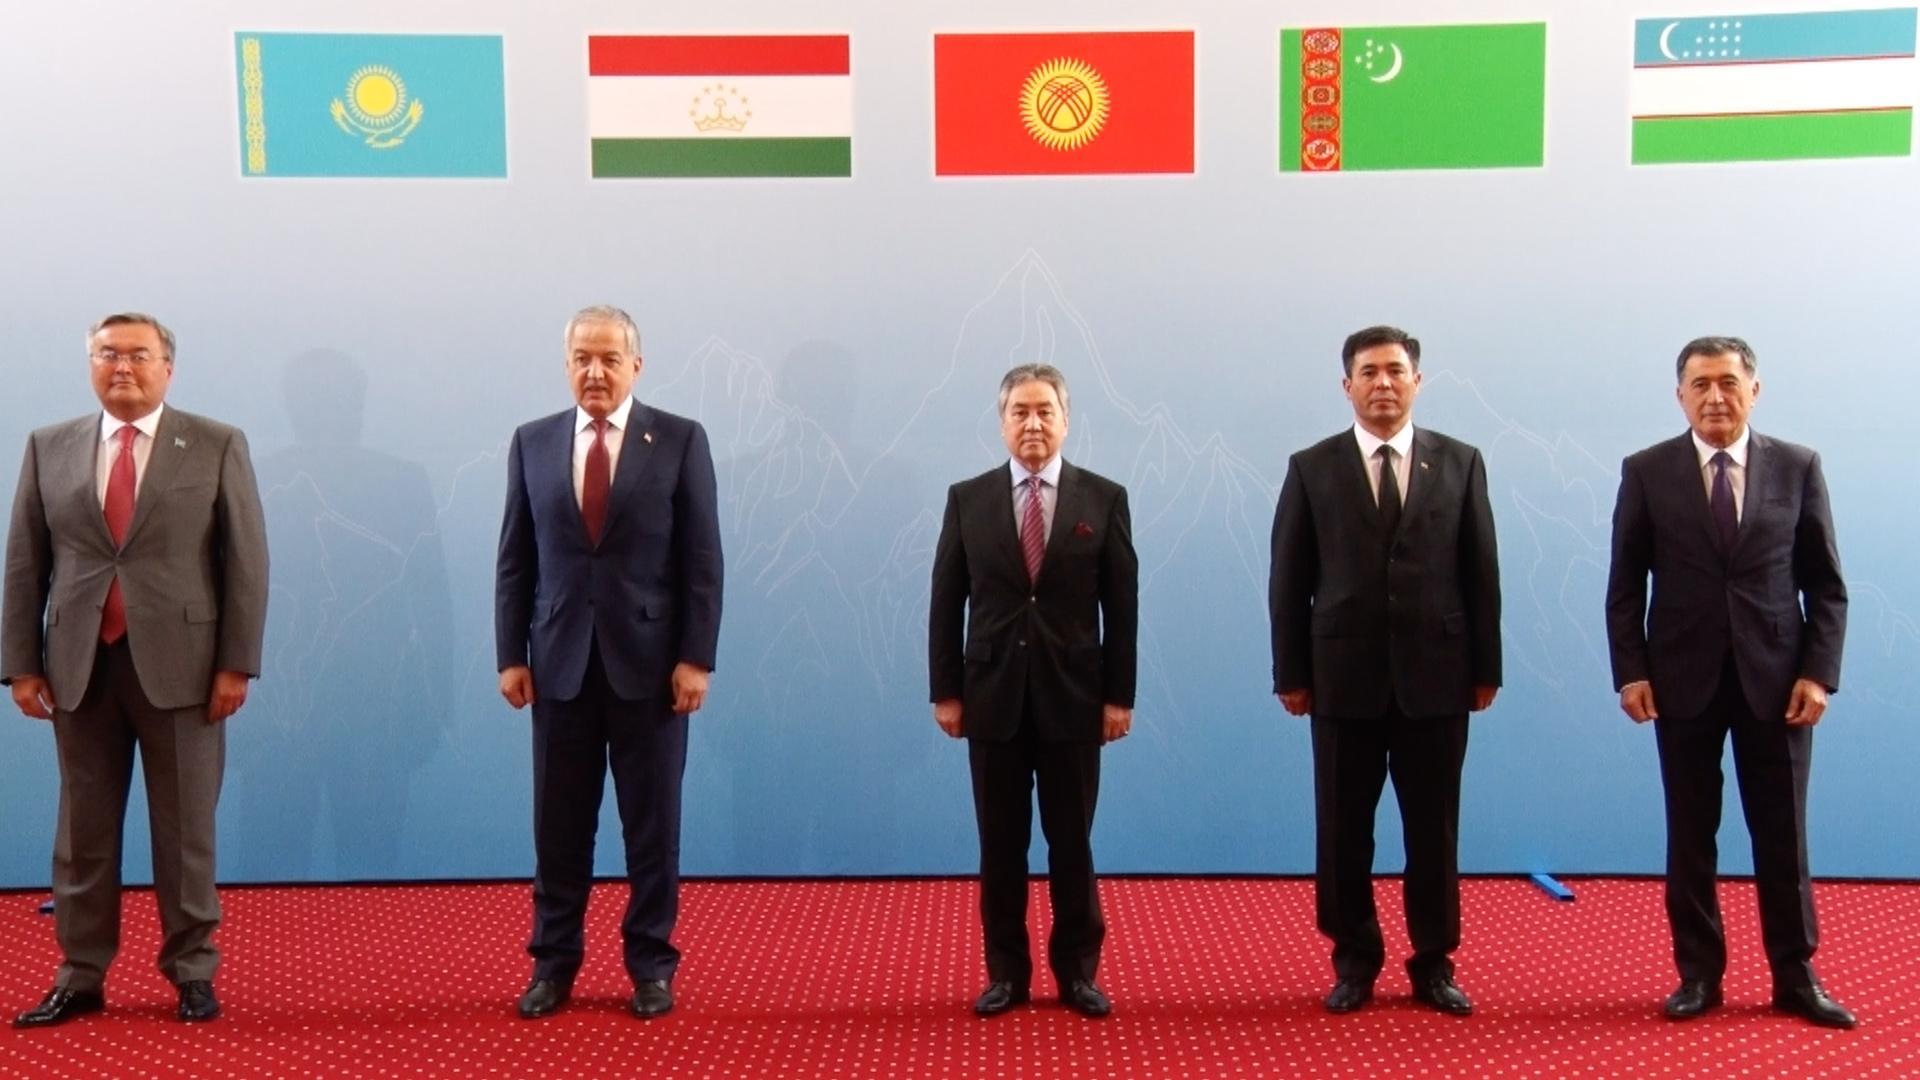 министр иностранных дел таджикистана